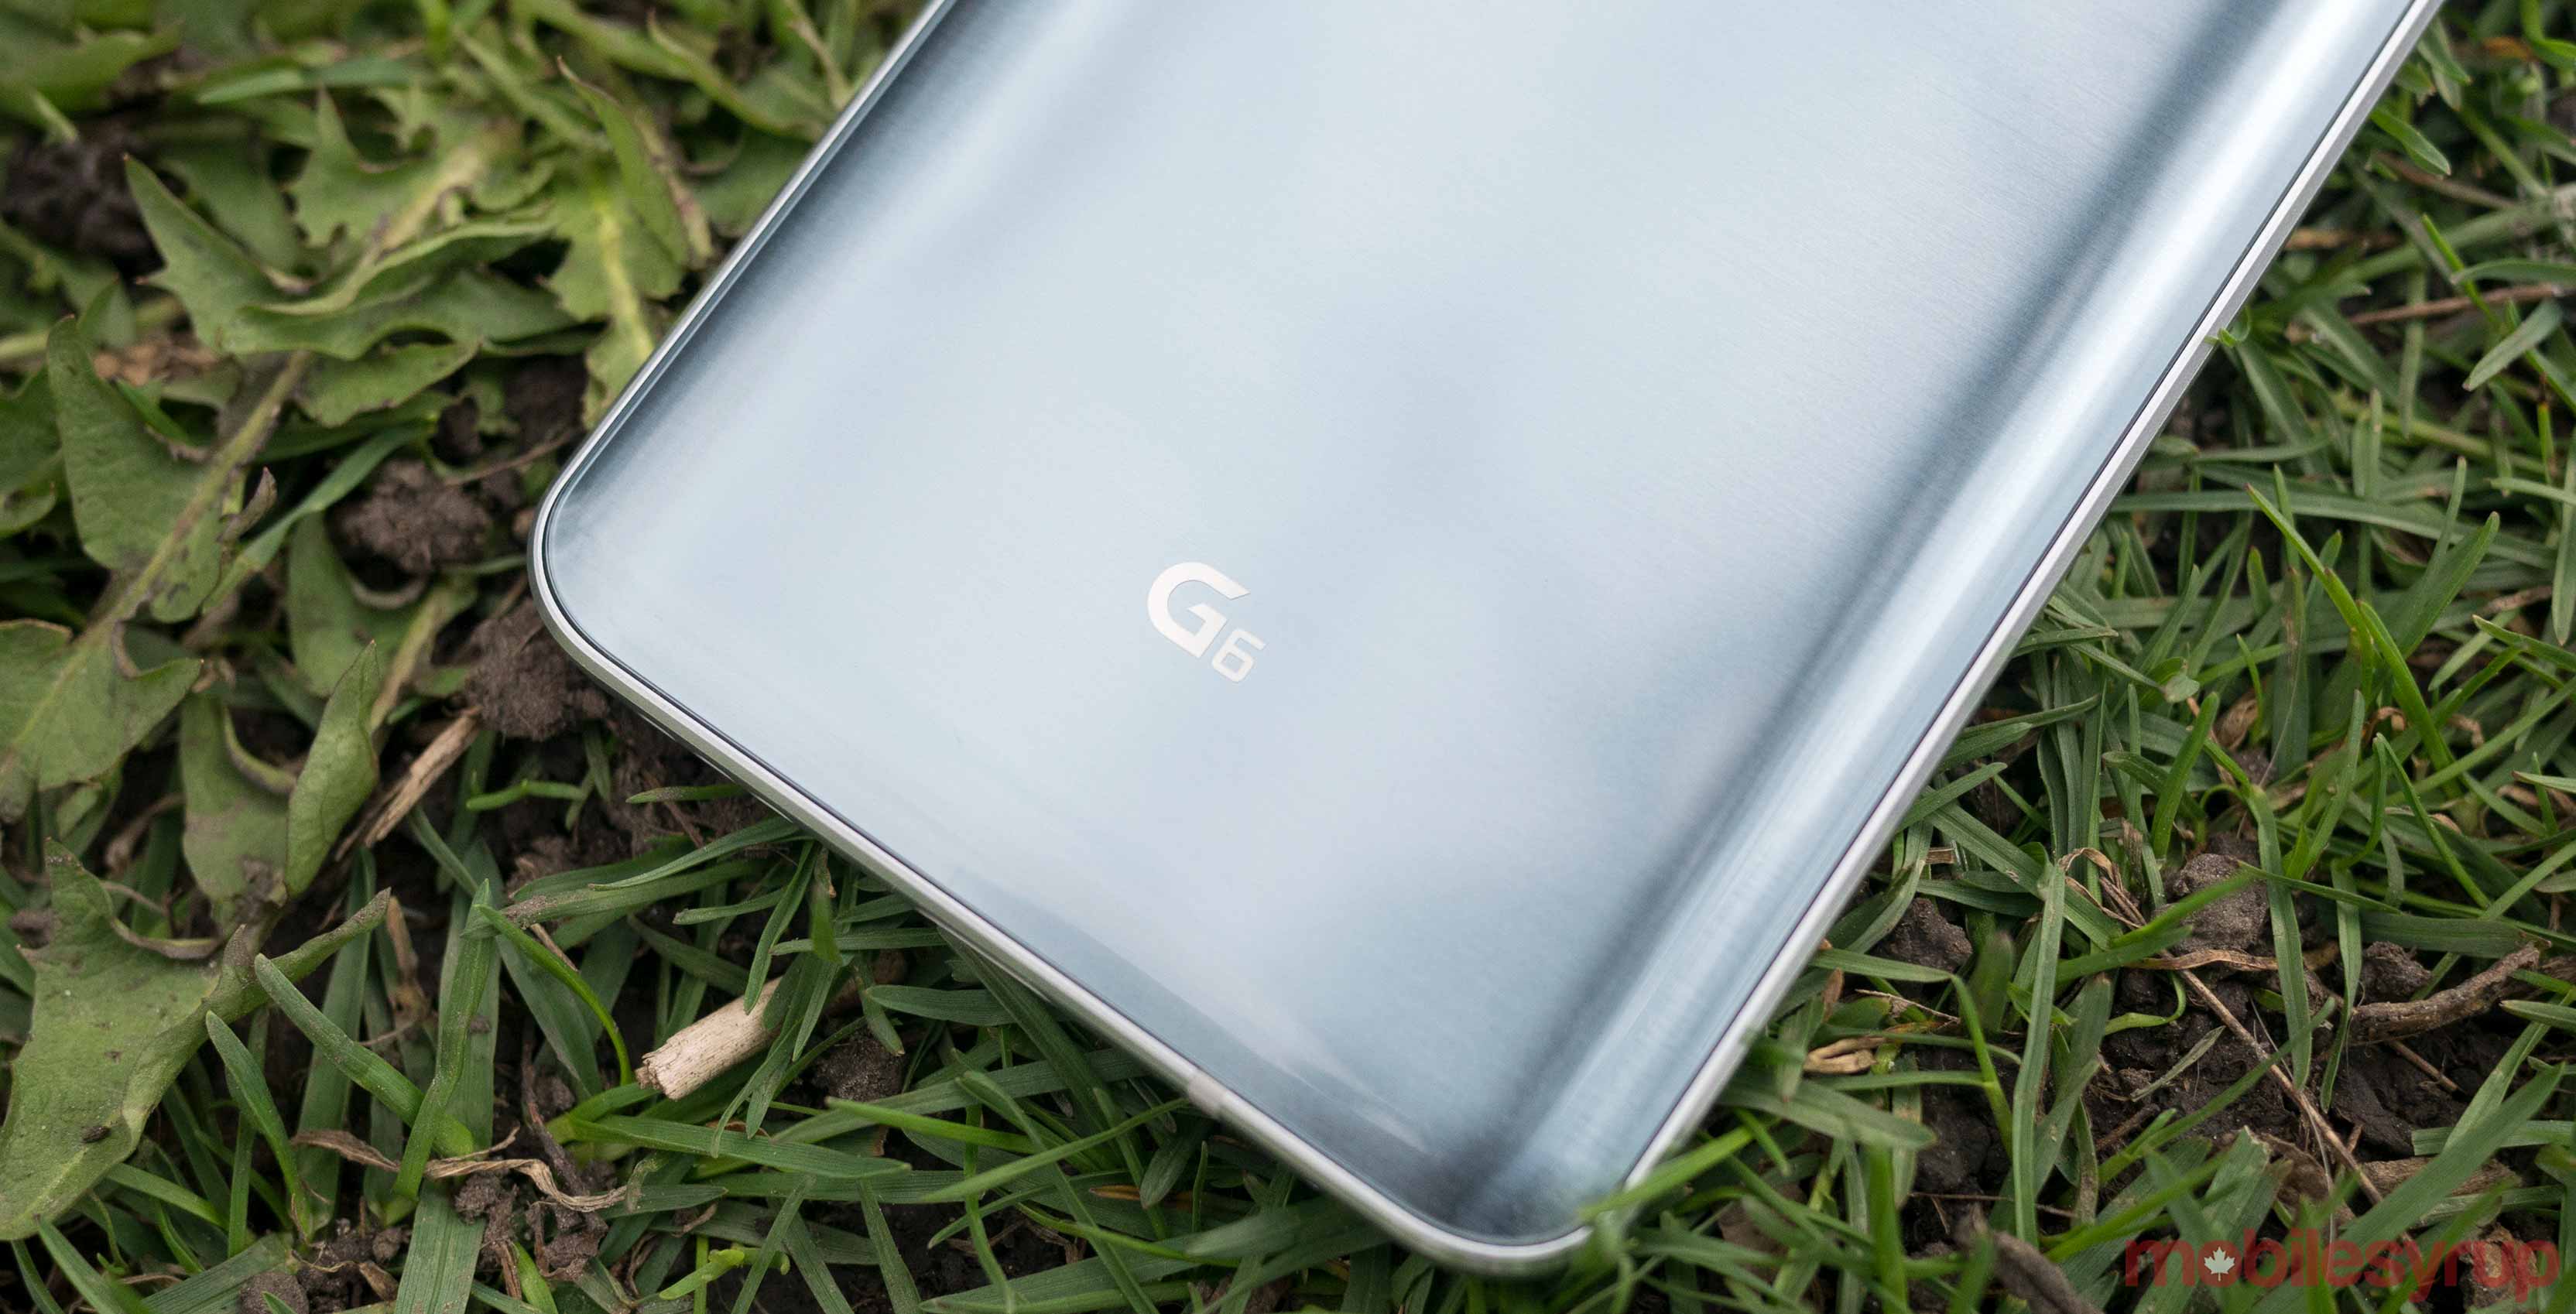 LG G6 in grass